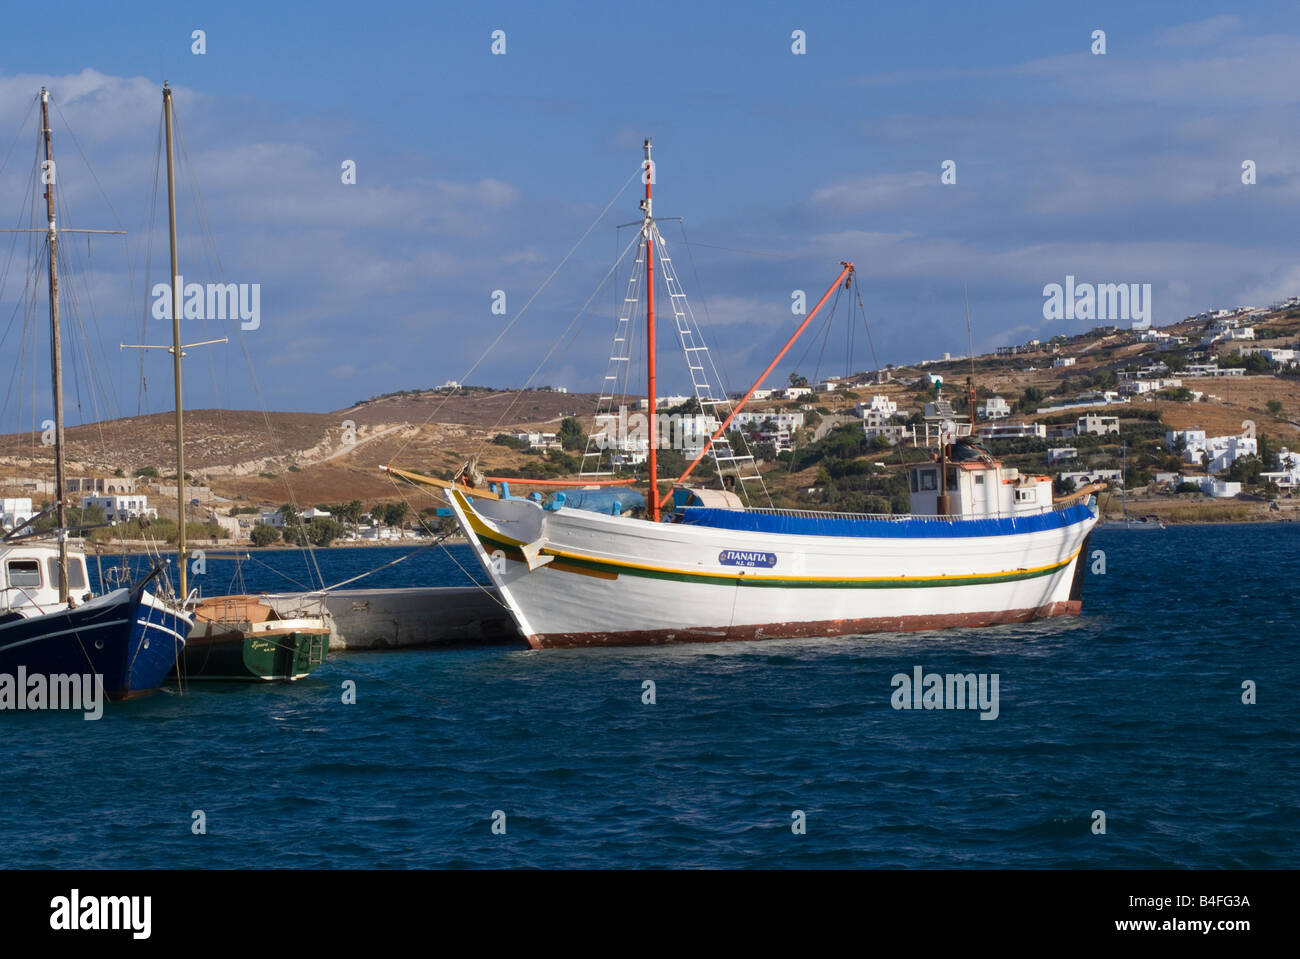 Les yachts et les travailleurs grecs traditionnels Bateau amarré au quai à Parikia Harbour à l'île de Paros Cyclades Grèce Mer Egée Banque D'Images